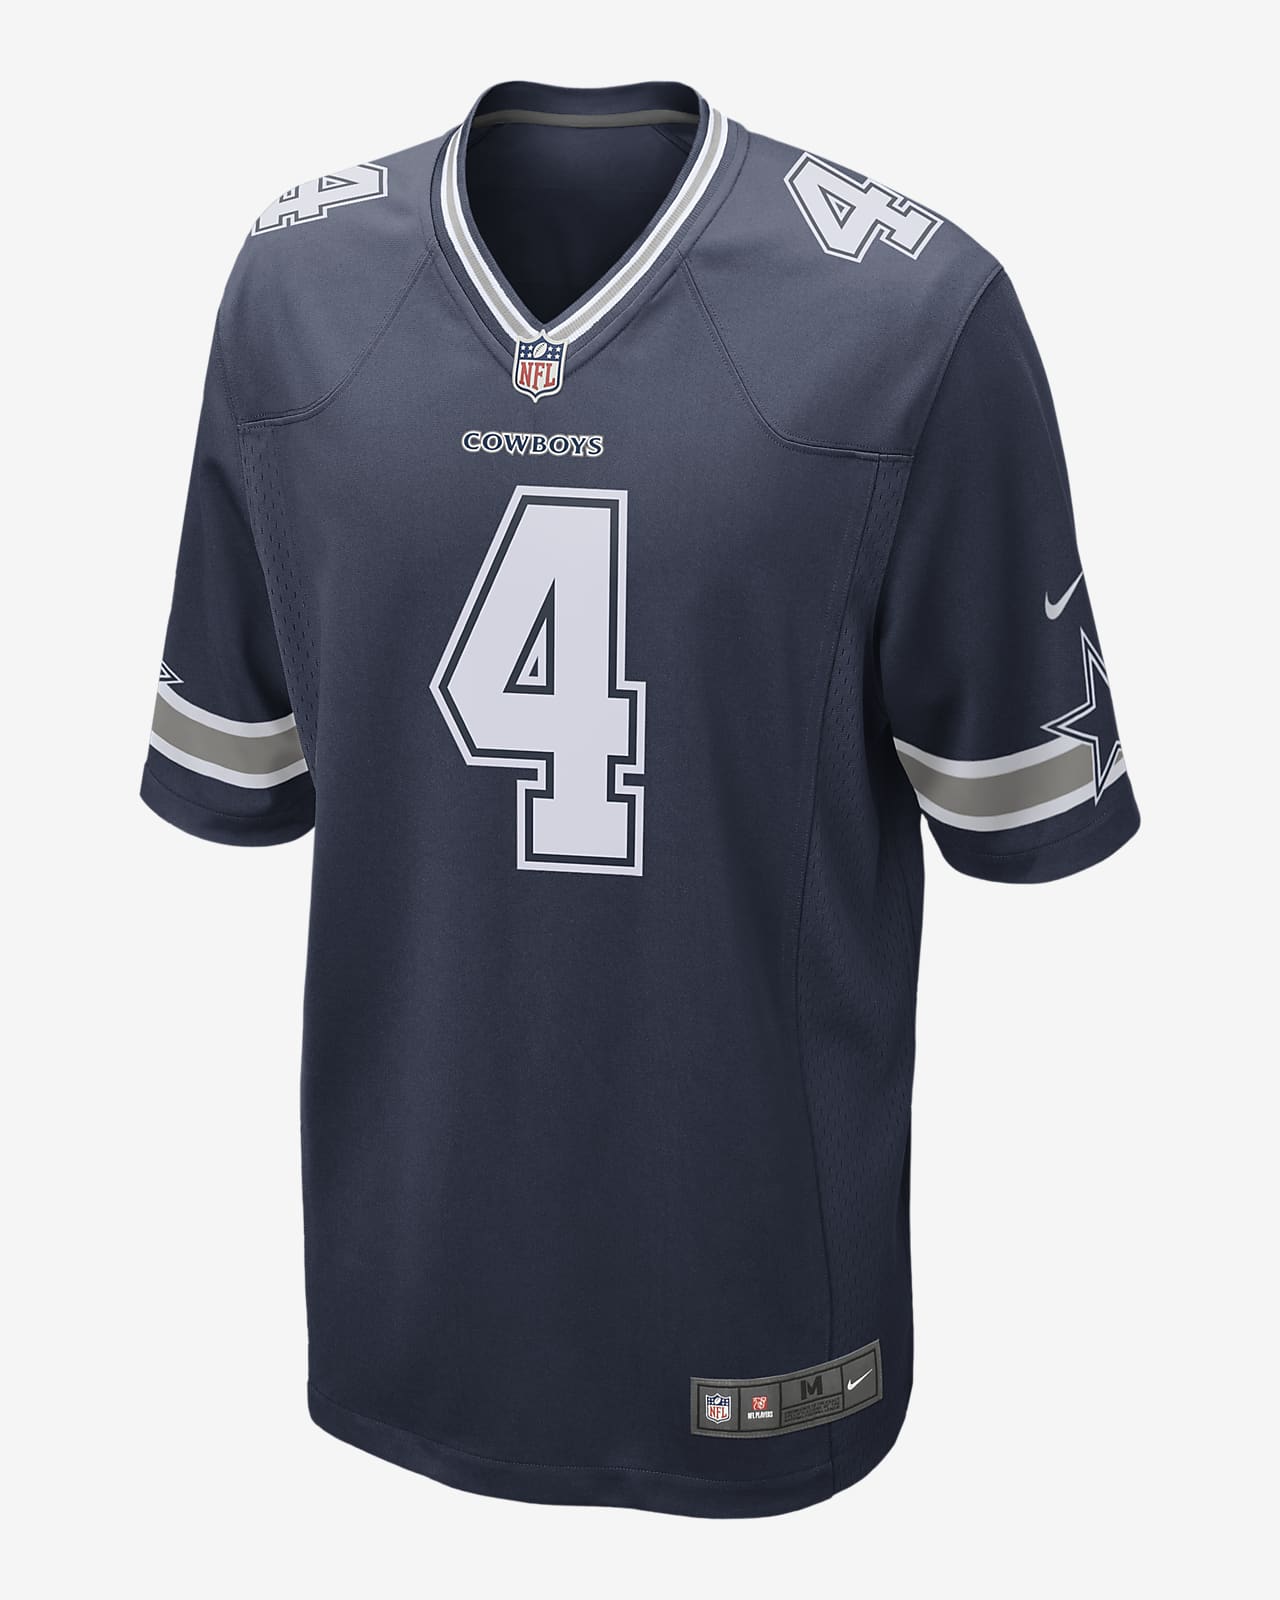 Jersey de fútbol americano NFL Dallas Cowboys (Dak Prescott) para hombre